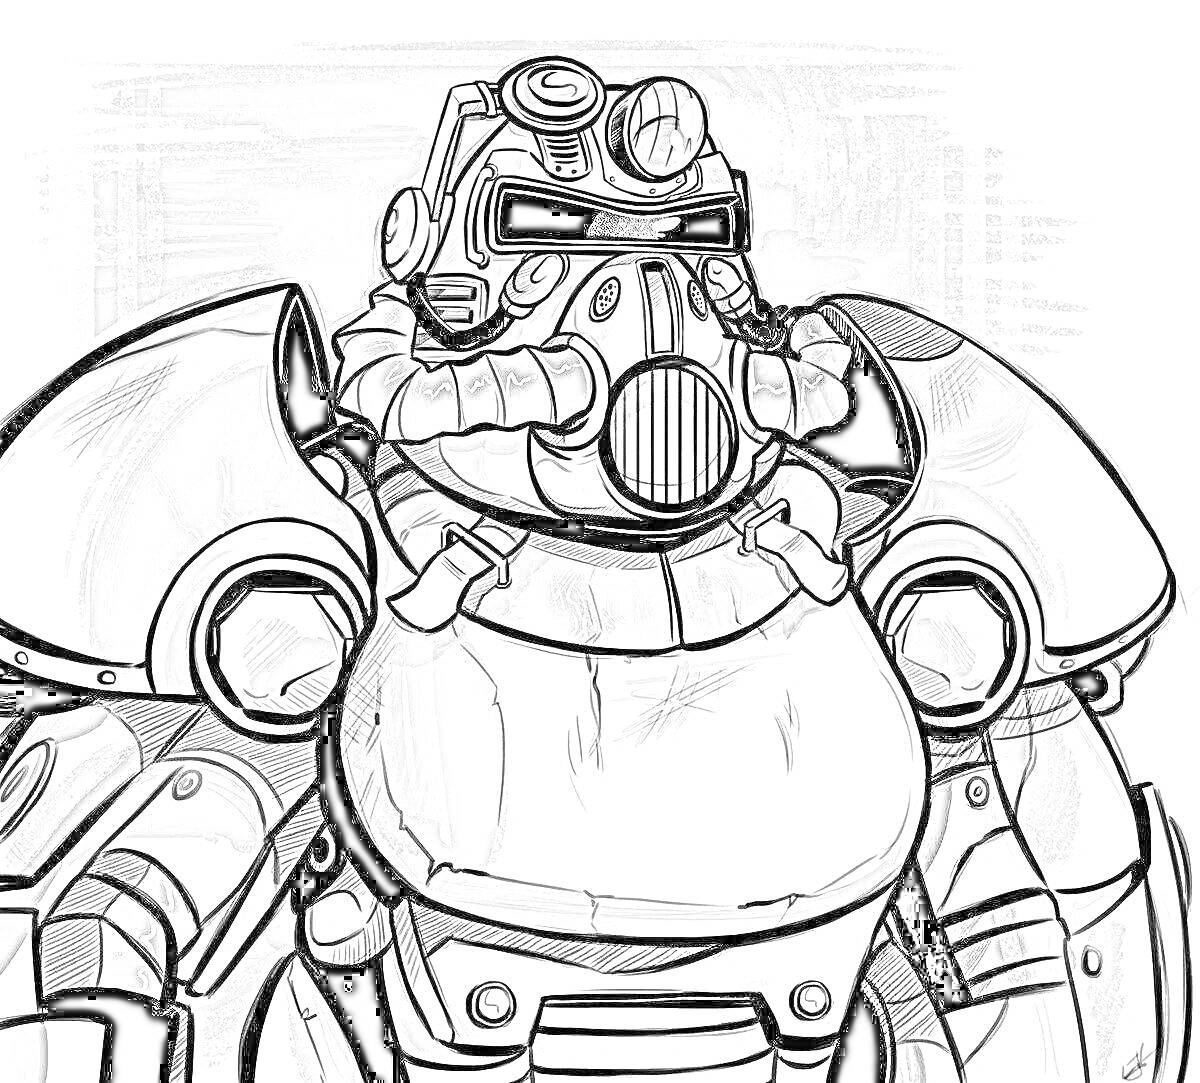 Раскраска Воин в силовой броне из Fallout 4 с крупной грудной пластиной, шлемом с маской и трубками, круглыми плечевыми накладками и деталями в виде шестеренок